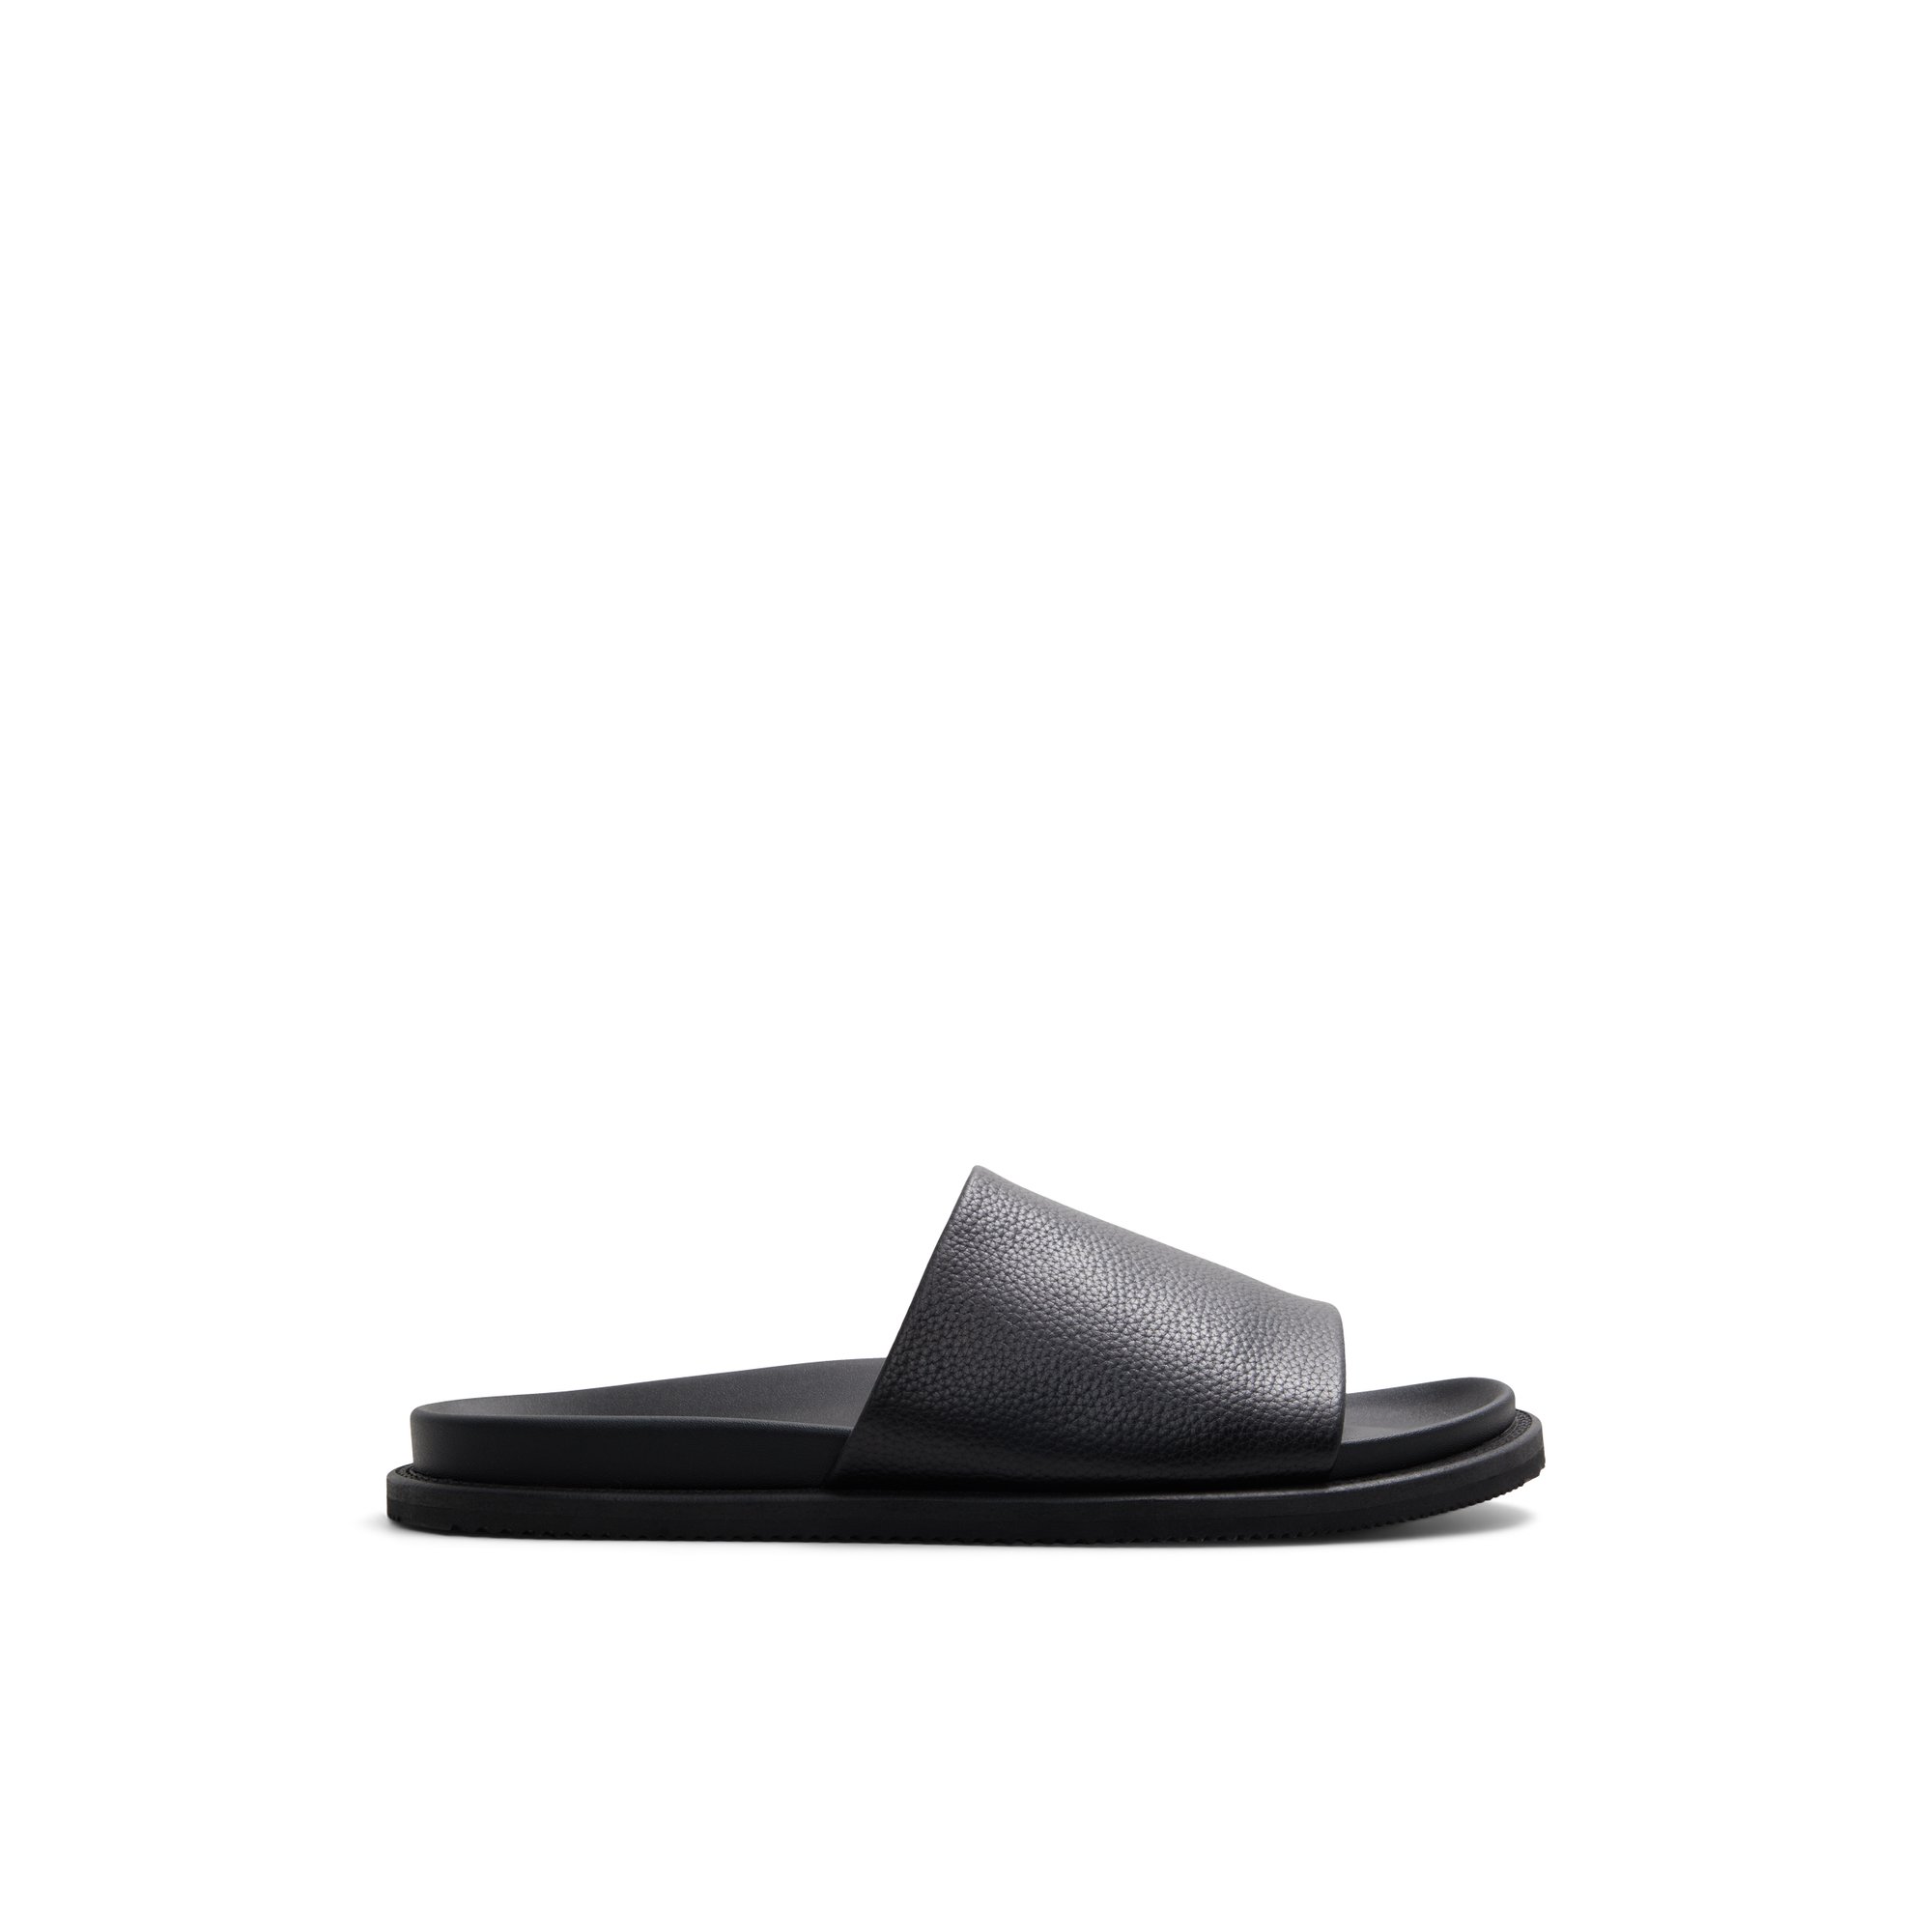 ALDO Gentslide - Men's Sandals Slides - Black